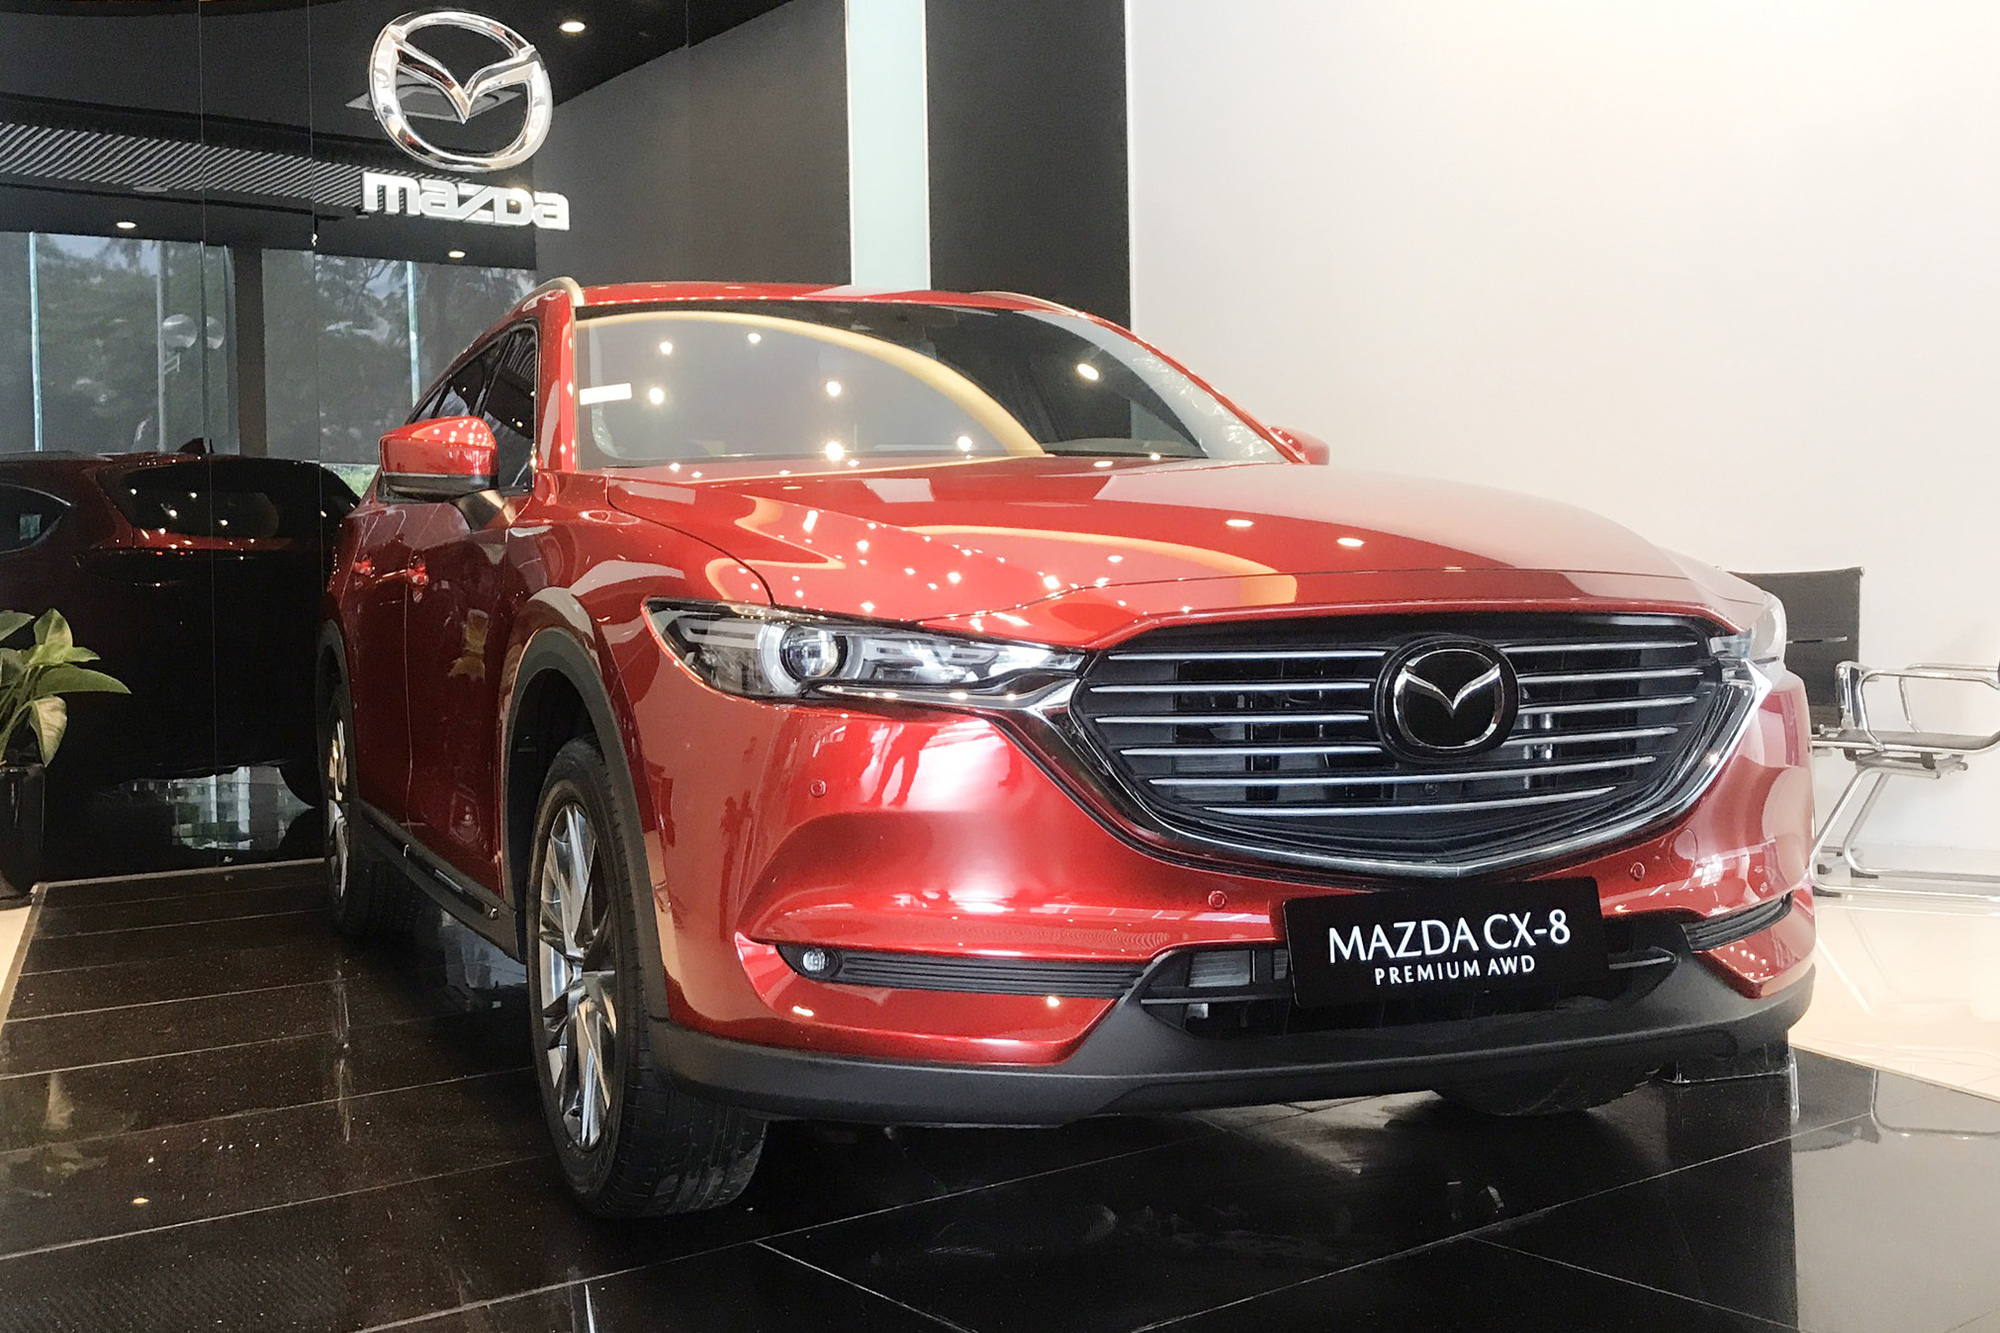 Mazda CX-8 giảm giá kỷ lục 100 triệu đồng, phiên bản ‘giá rẻ’ lên lịch bán ra, gần ngang CX-5 - Ảnh 1.